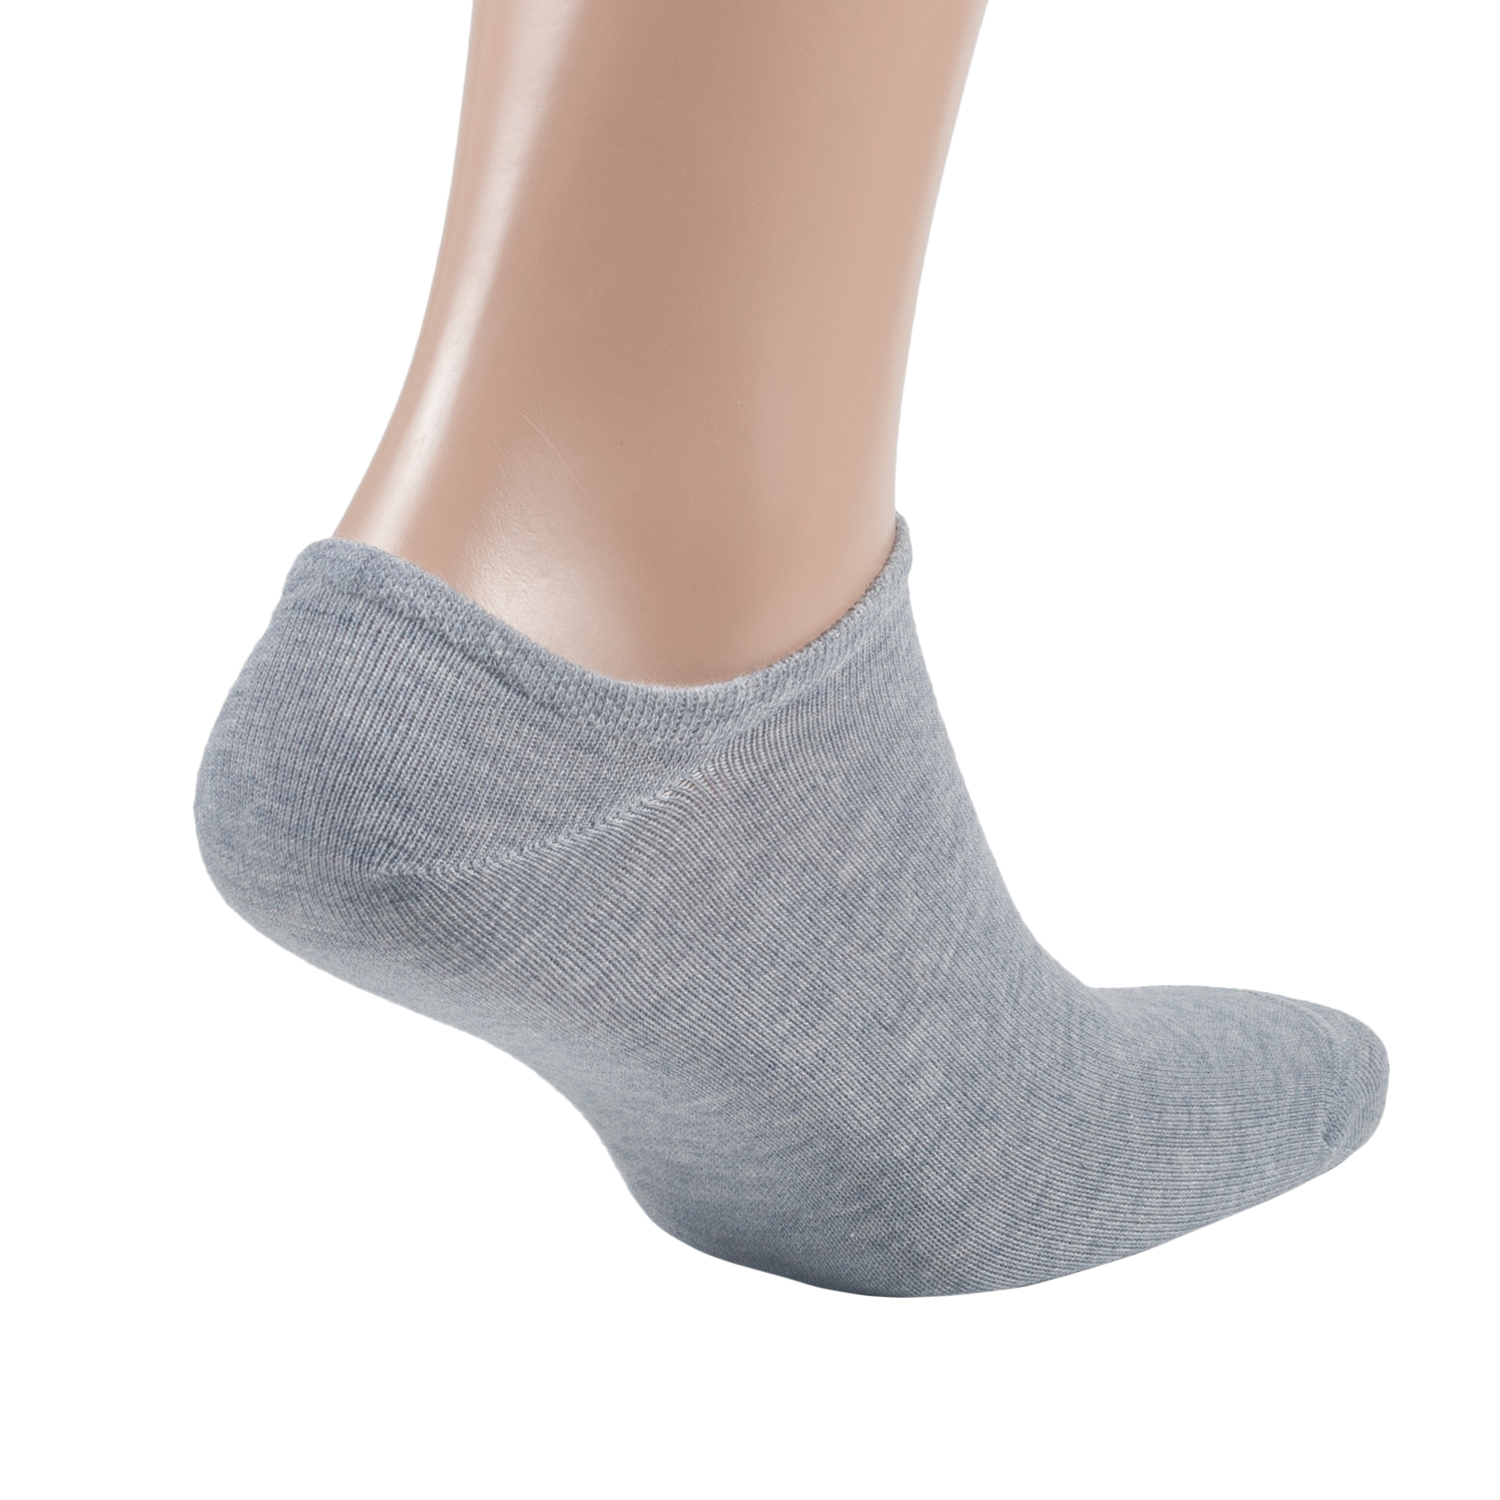 Как правильно называются короткие мужские носки С чем носить укороченные носки, из каких материалов они чаще всего изготавливаются Какую модель носков выбрать мужчинам для обуви с низкой посадкой